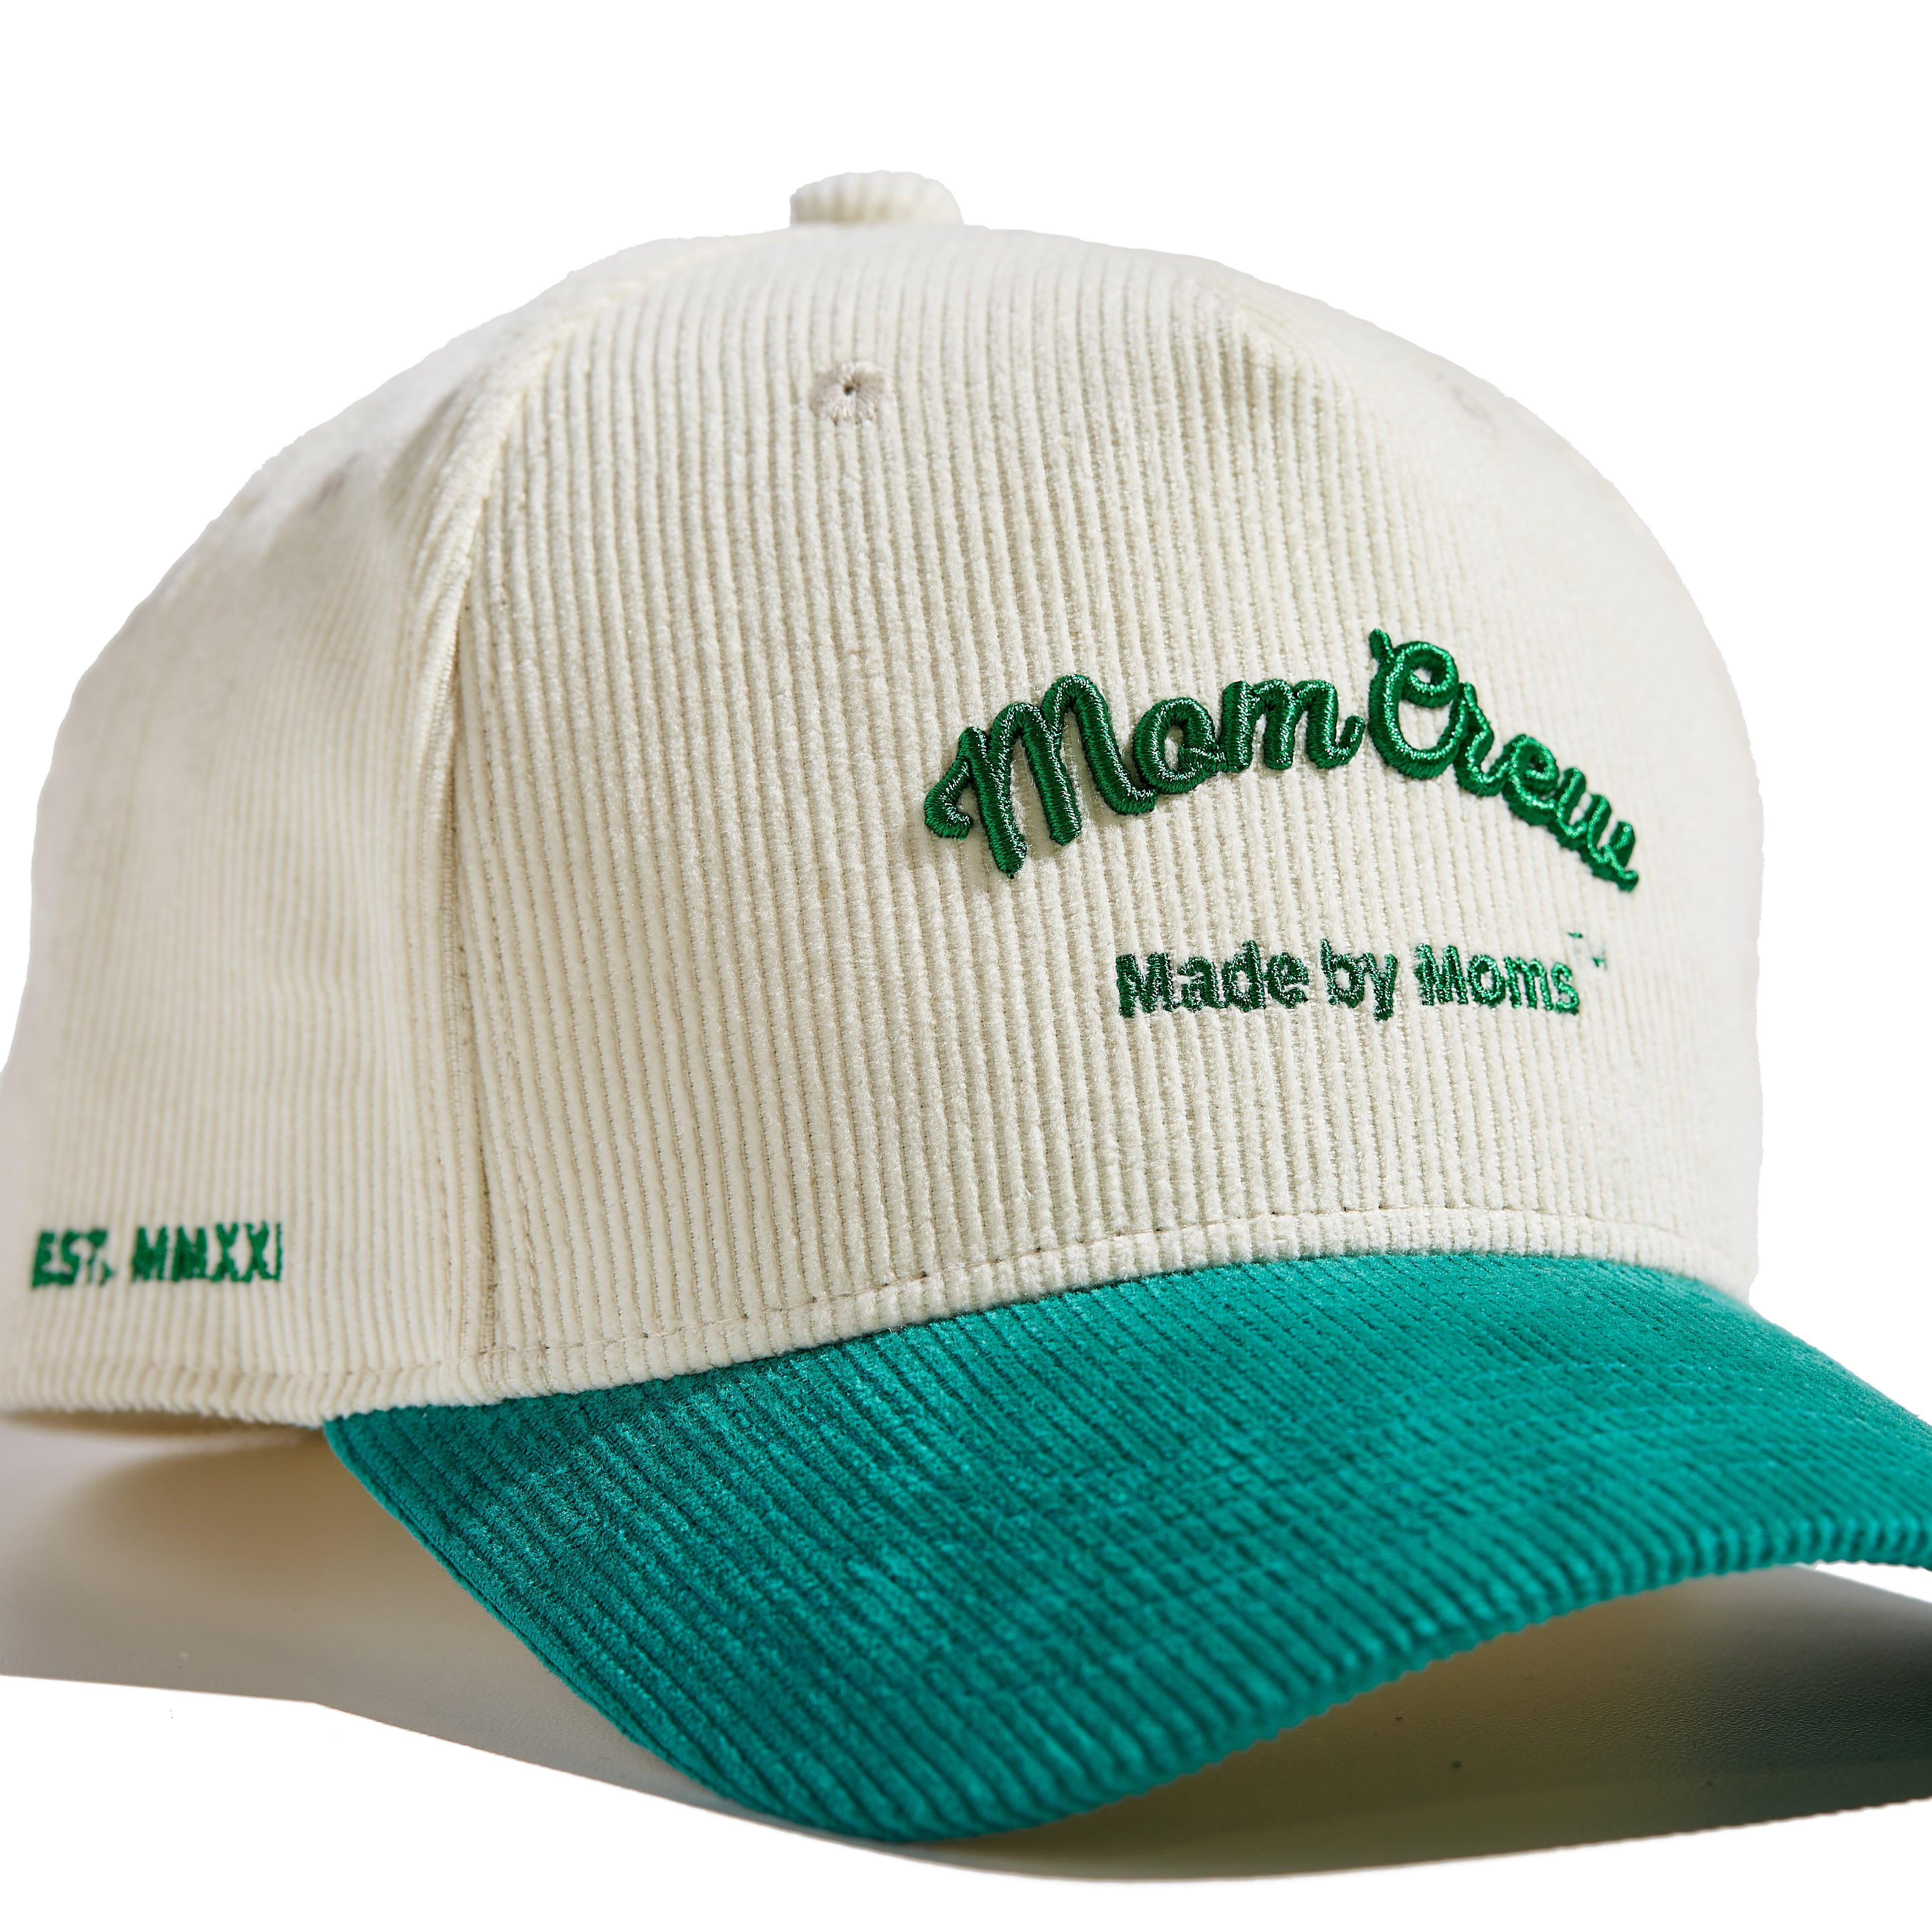 The 'MomCrew' Green Corduroy Cap - Momcrew